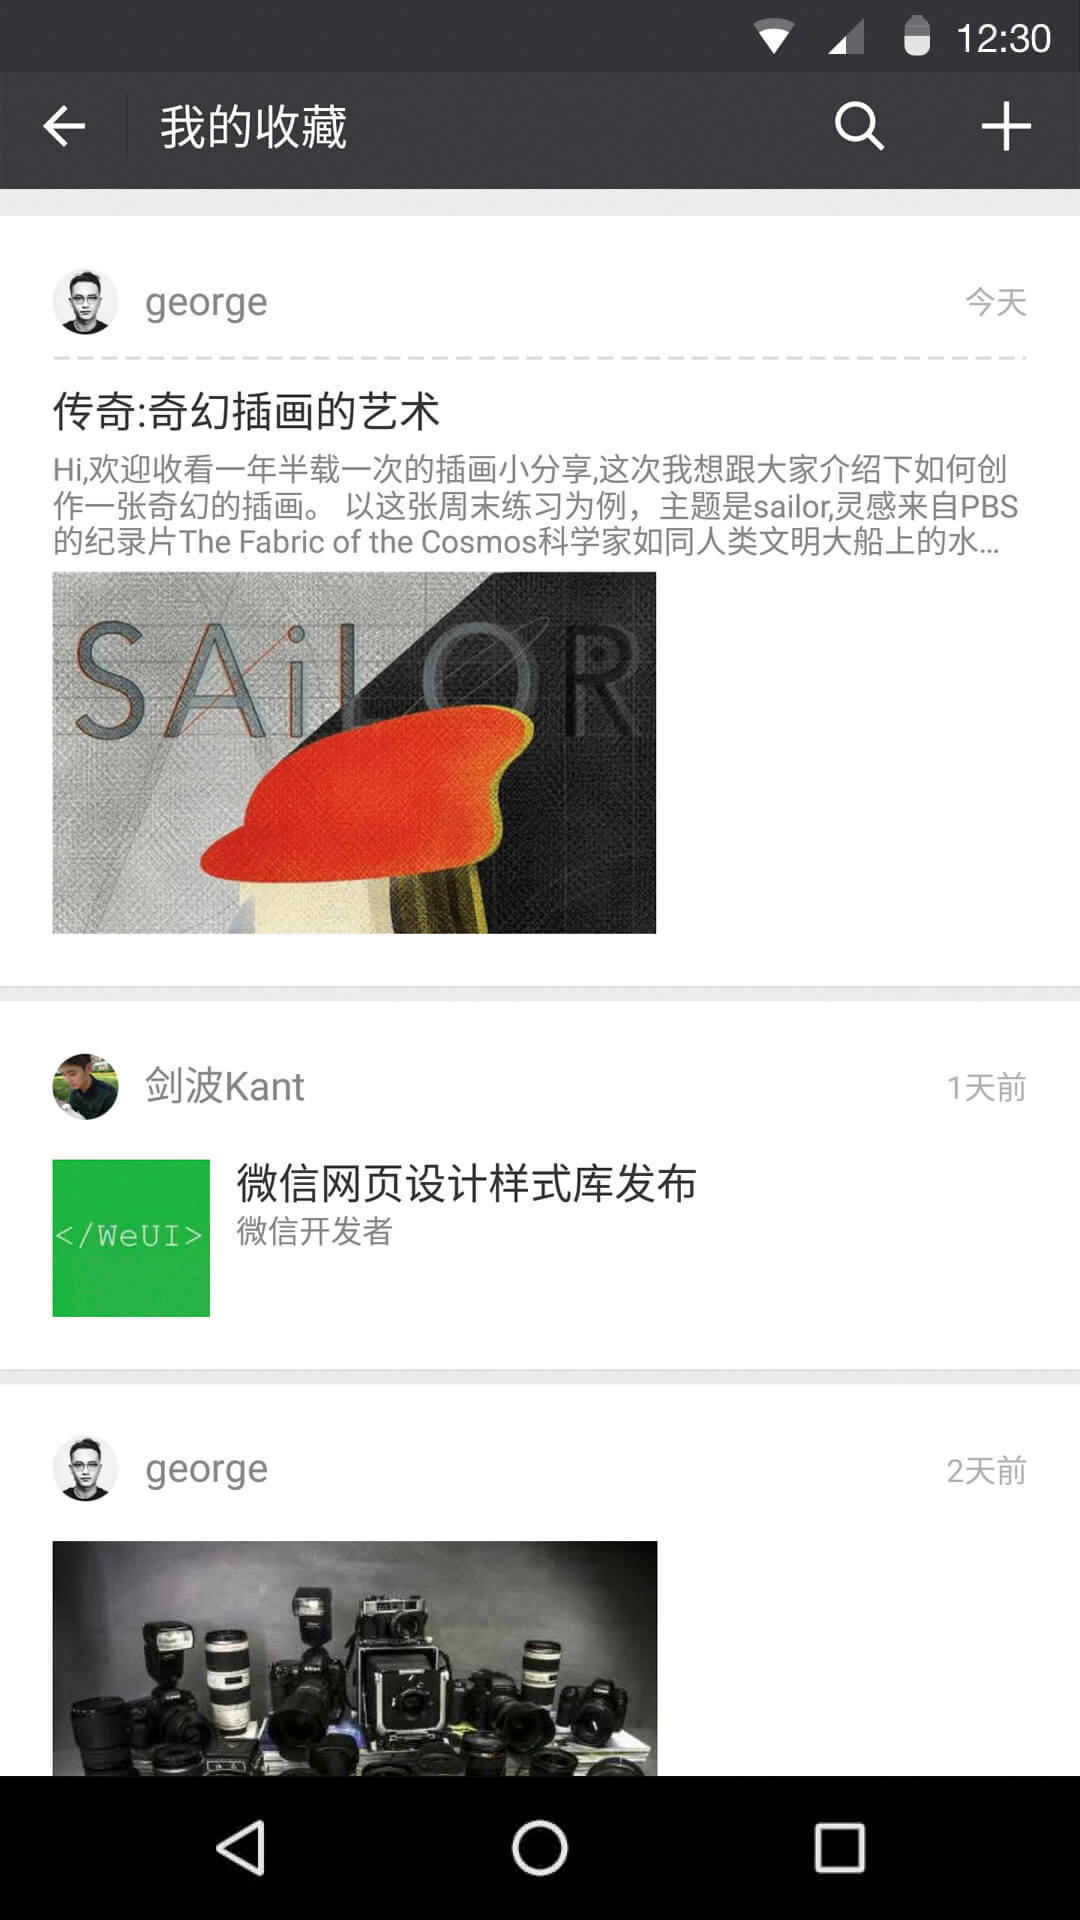 微信6.3.11.49版本发微信红包照片 Android Wear 也可以收红包